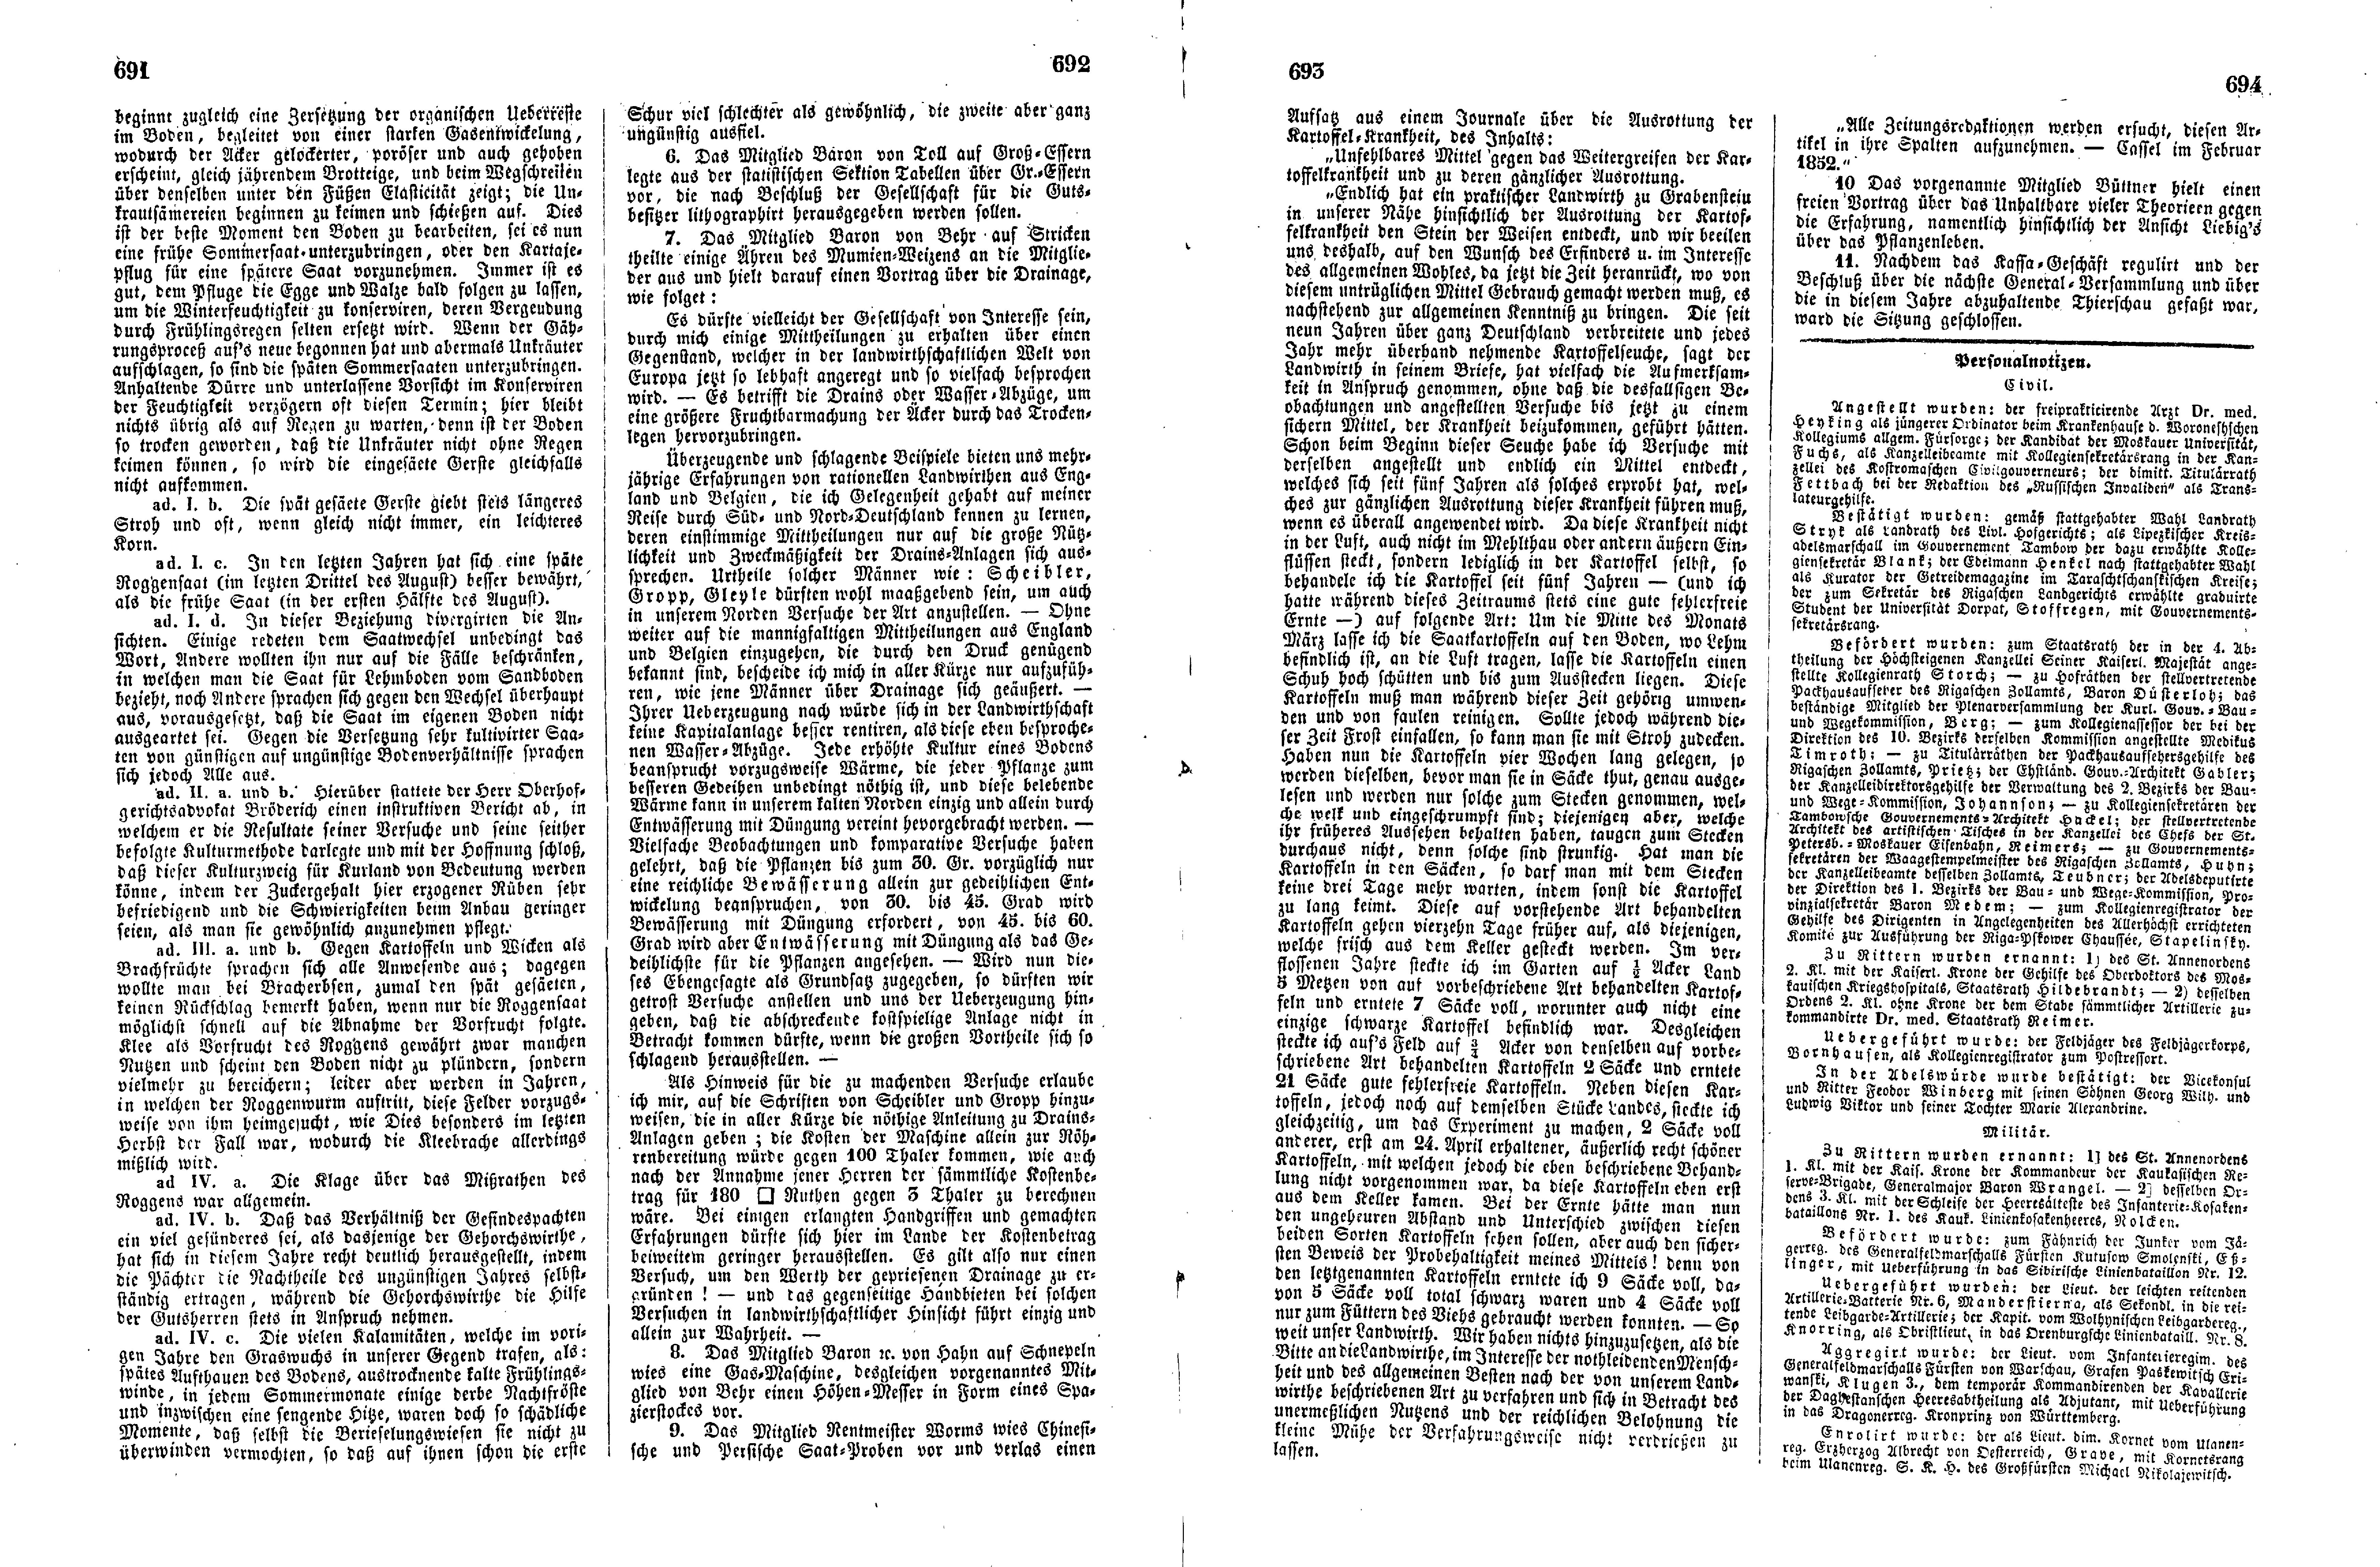 Das Inland [17] (1852) | 178. (691-694) Haupttext